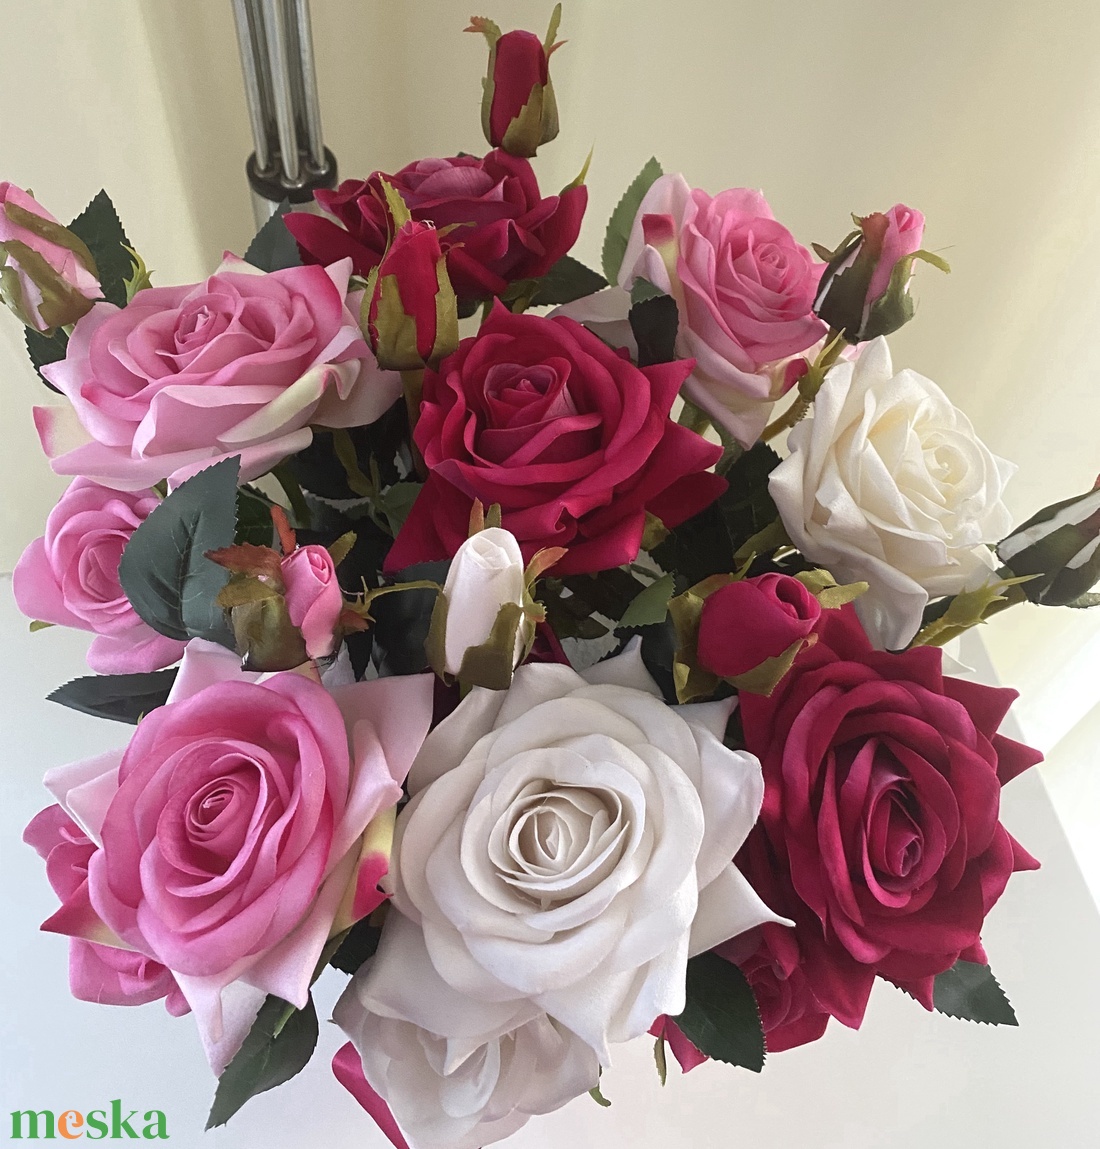 Prémium rózsa XL virágbox - otthon & lakás - dekoráció - virágdísz és tartó - csokor & virágdísz - Meska.hu